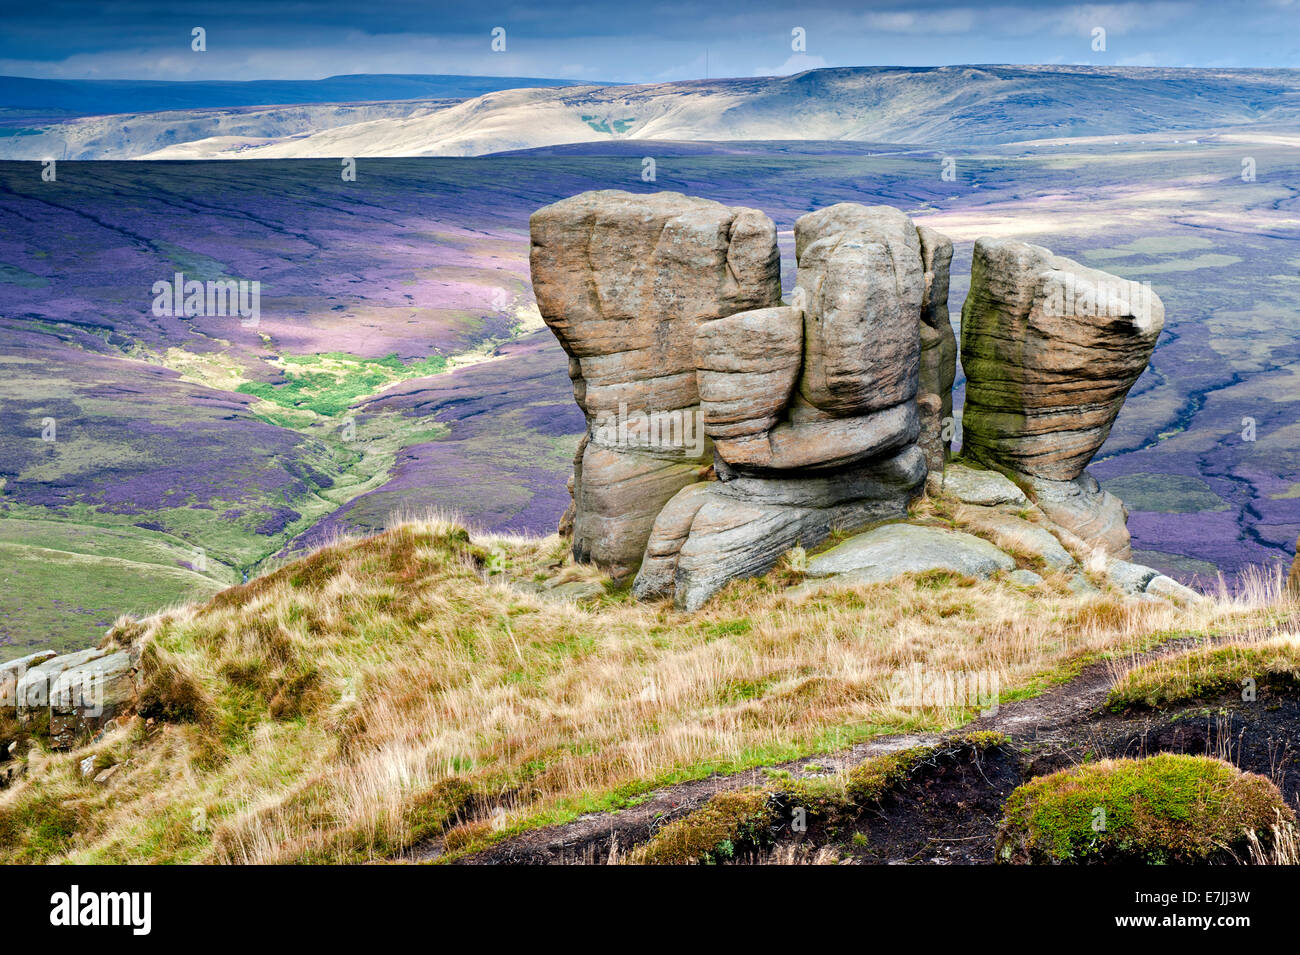 Il guanto di boxe che si affaccia su pietre Ashop nero Moor, Kinder Scout, Parco Nazionale di Peak District, Derbyshire, Inghilterra Foto Stock